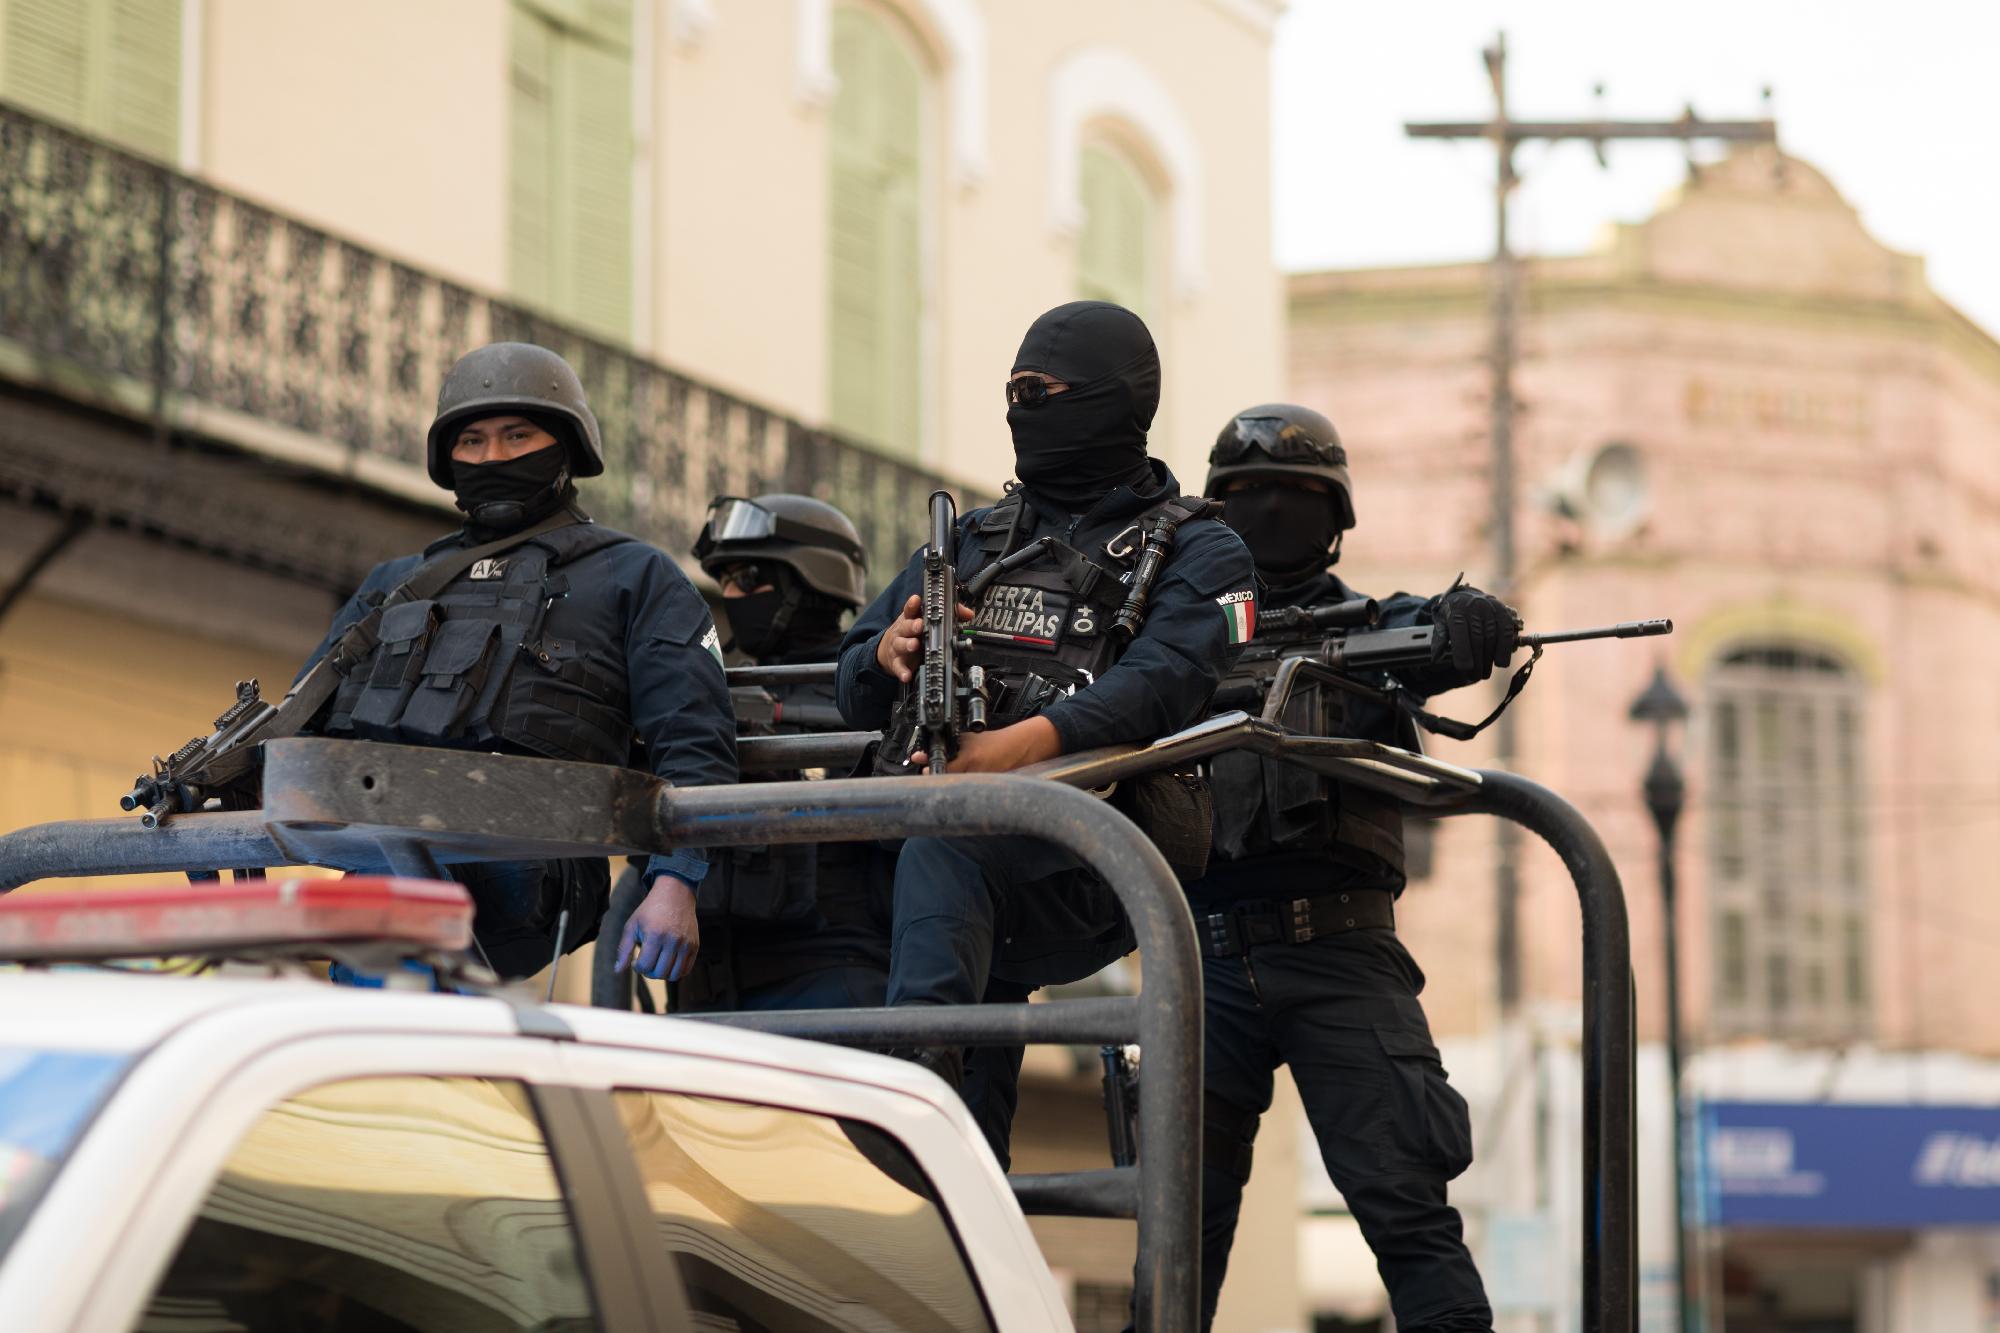 Tömegmészárlás történt egy mexikói városházán